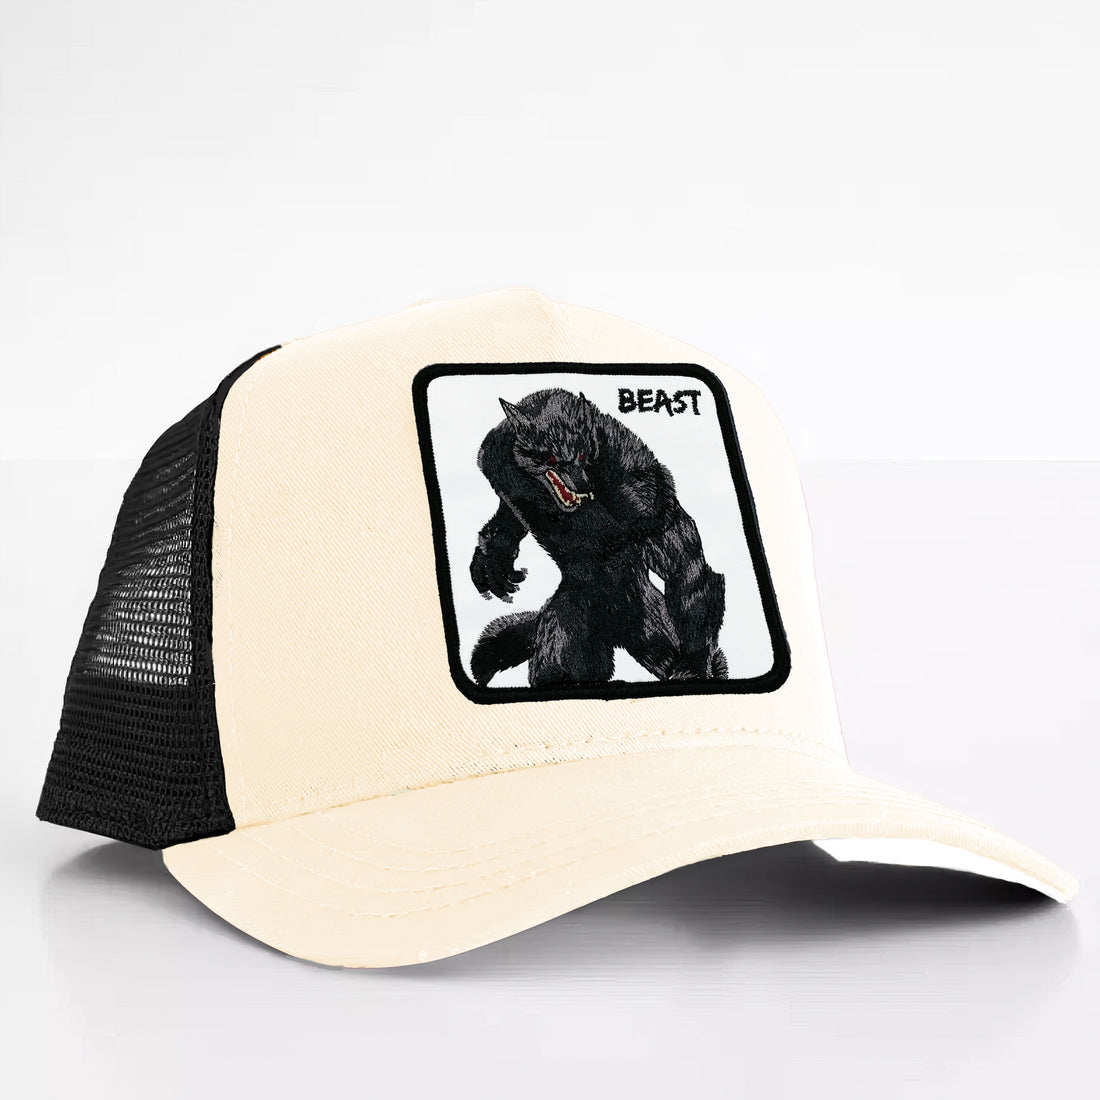 Werewolf "beast" Trucker hat